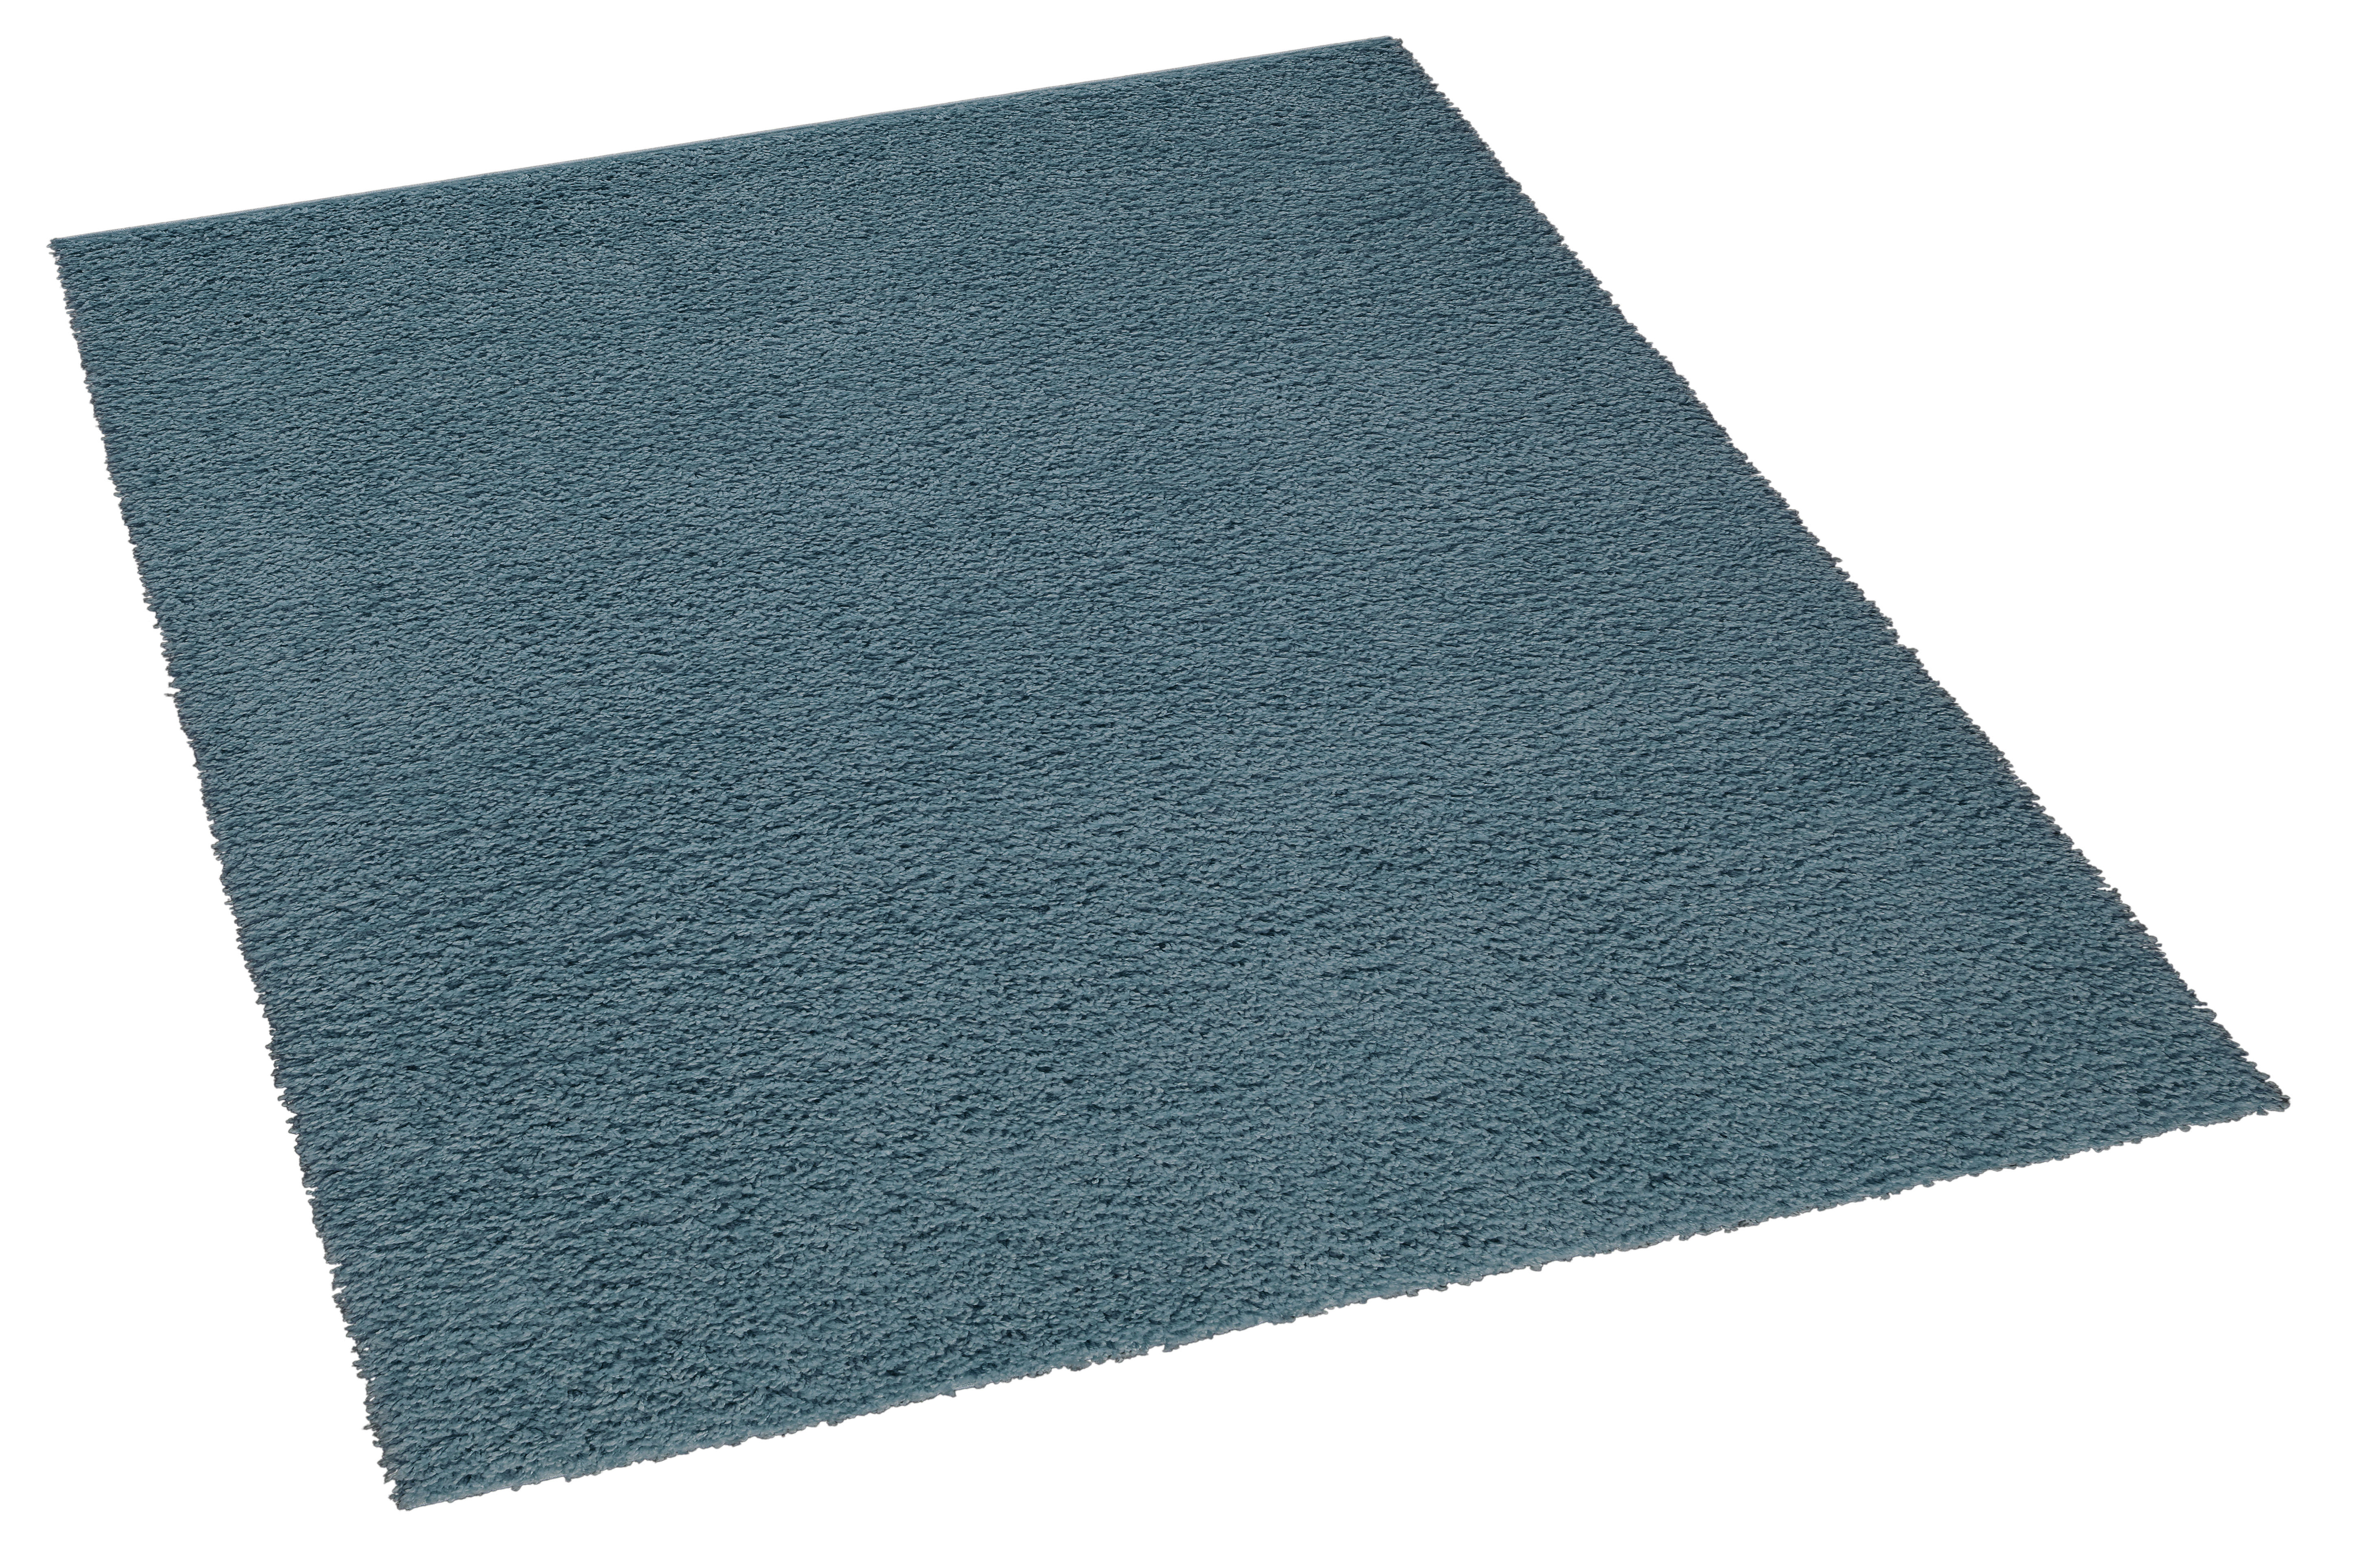 Teppich Clara blau B/L: ca. 133x190 cm Clara - blau (133,00/190,00cm)